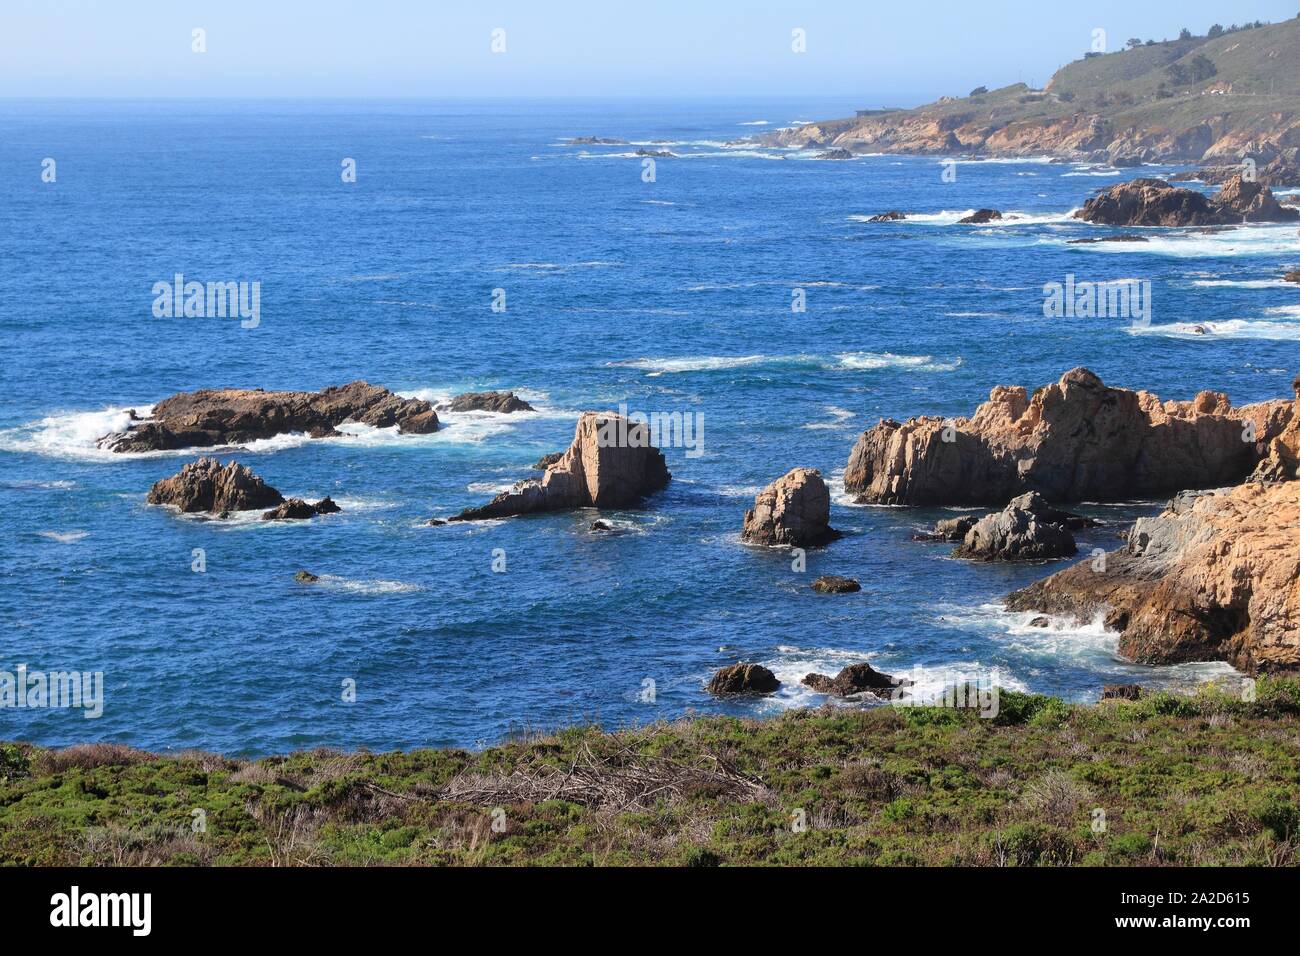 La contea di Monterey in California - paesaggio della costa in Garrapata State Park. Foto Stock